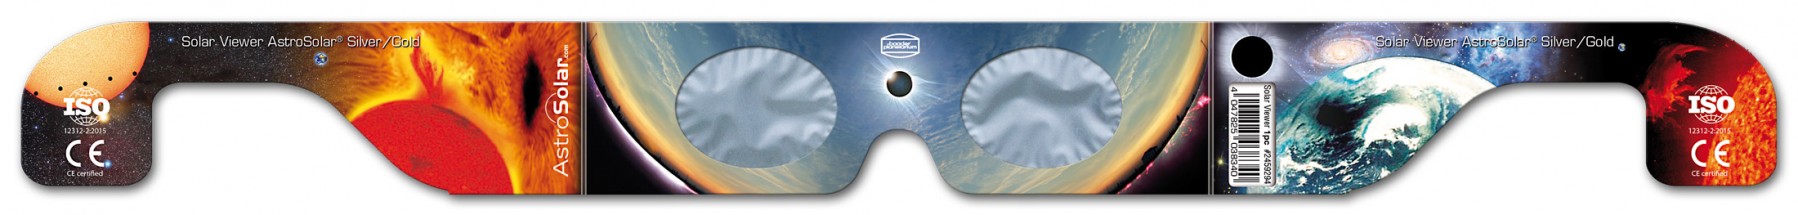 Solar Viewer AstroSolar® Silver/Gold - Vorderseite